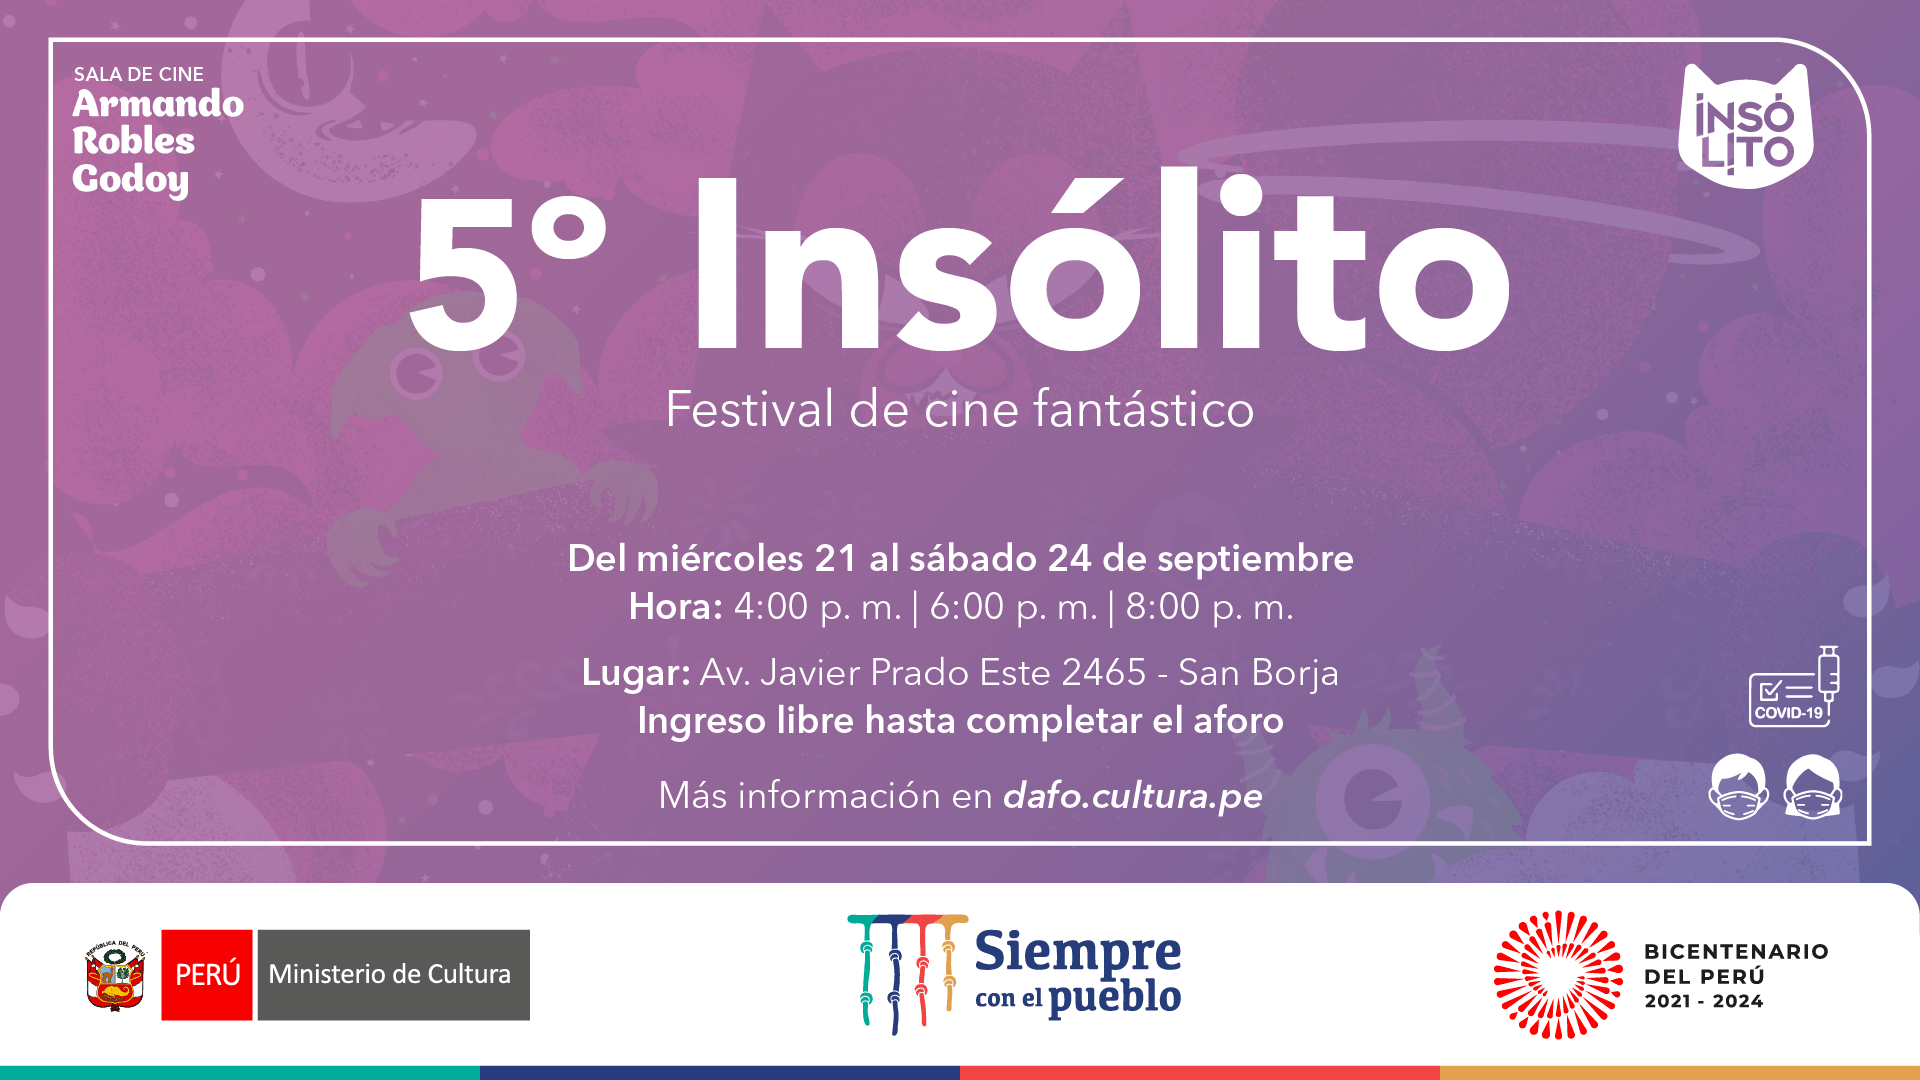 5° Insólito - festival de cine fantástico en la sala Armando Robles Godoy